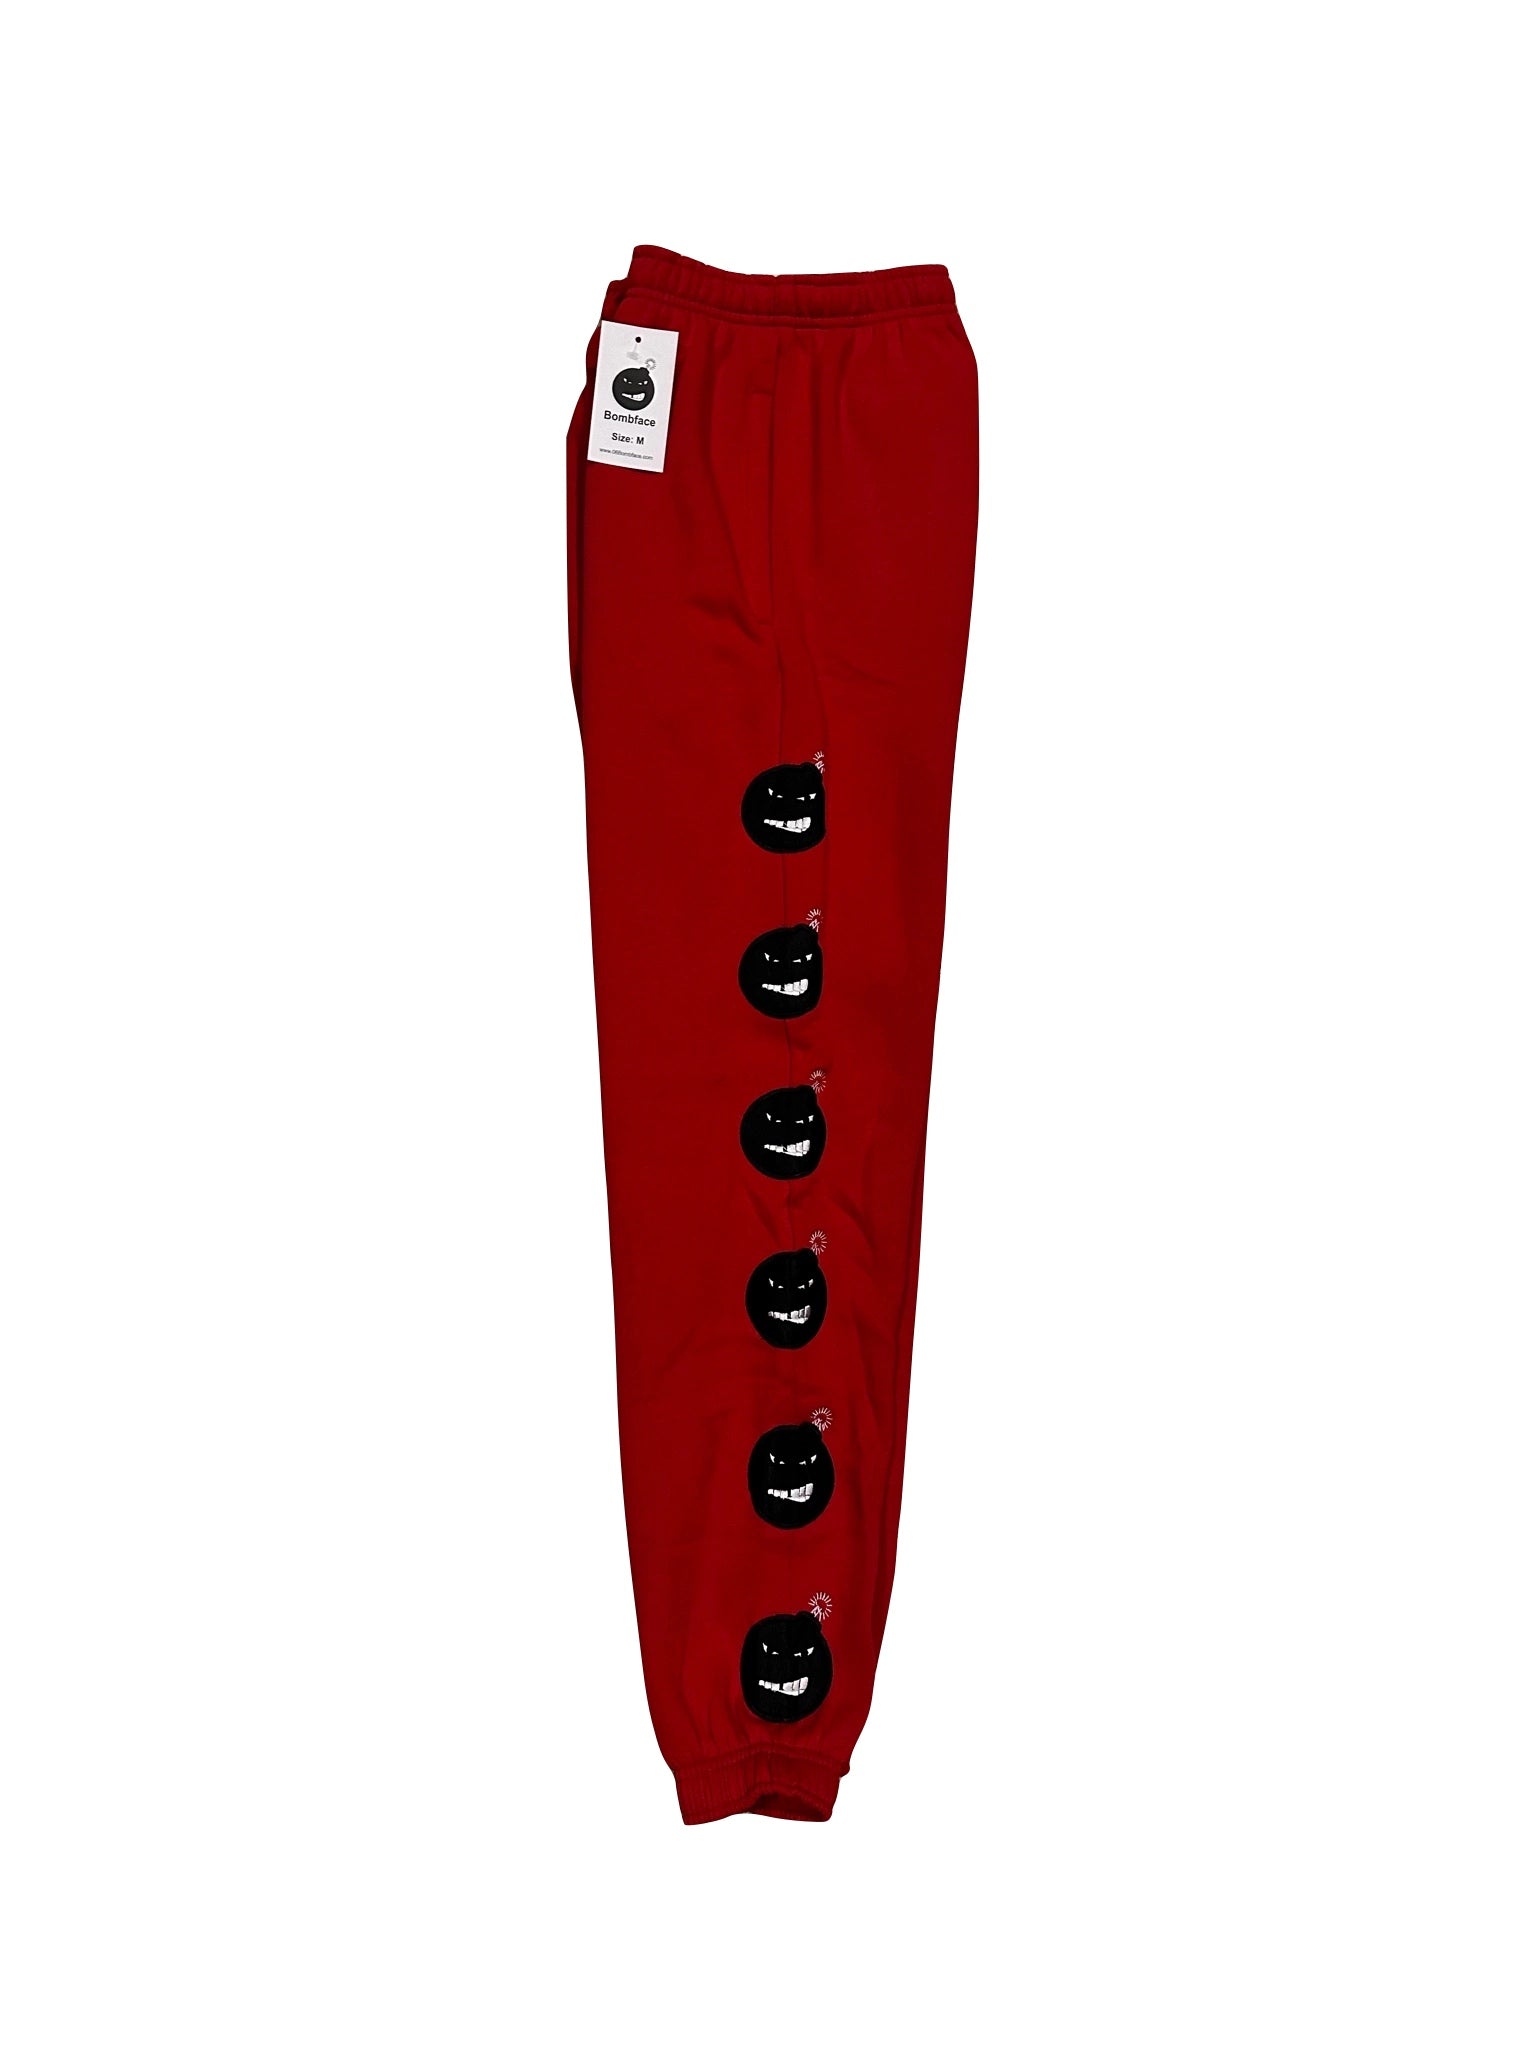 Red sweatpants, BombFace Red Sweatpants, Sweatpants with zippers, Red pants, classic red sweatpants